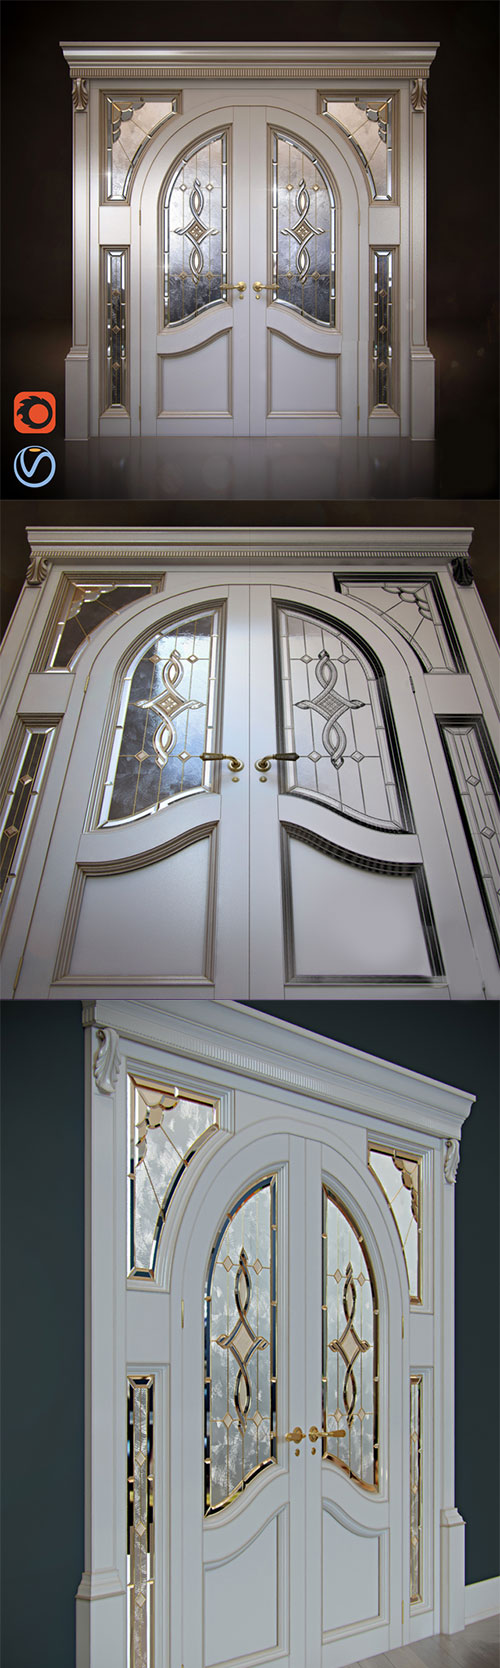 Classic doors - arch